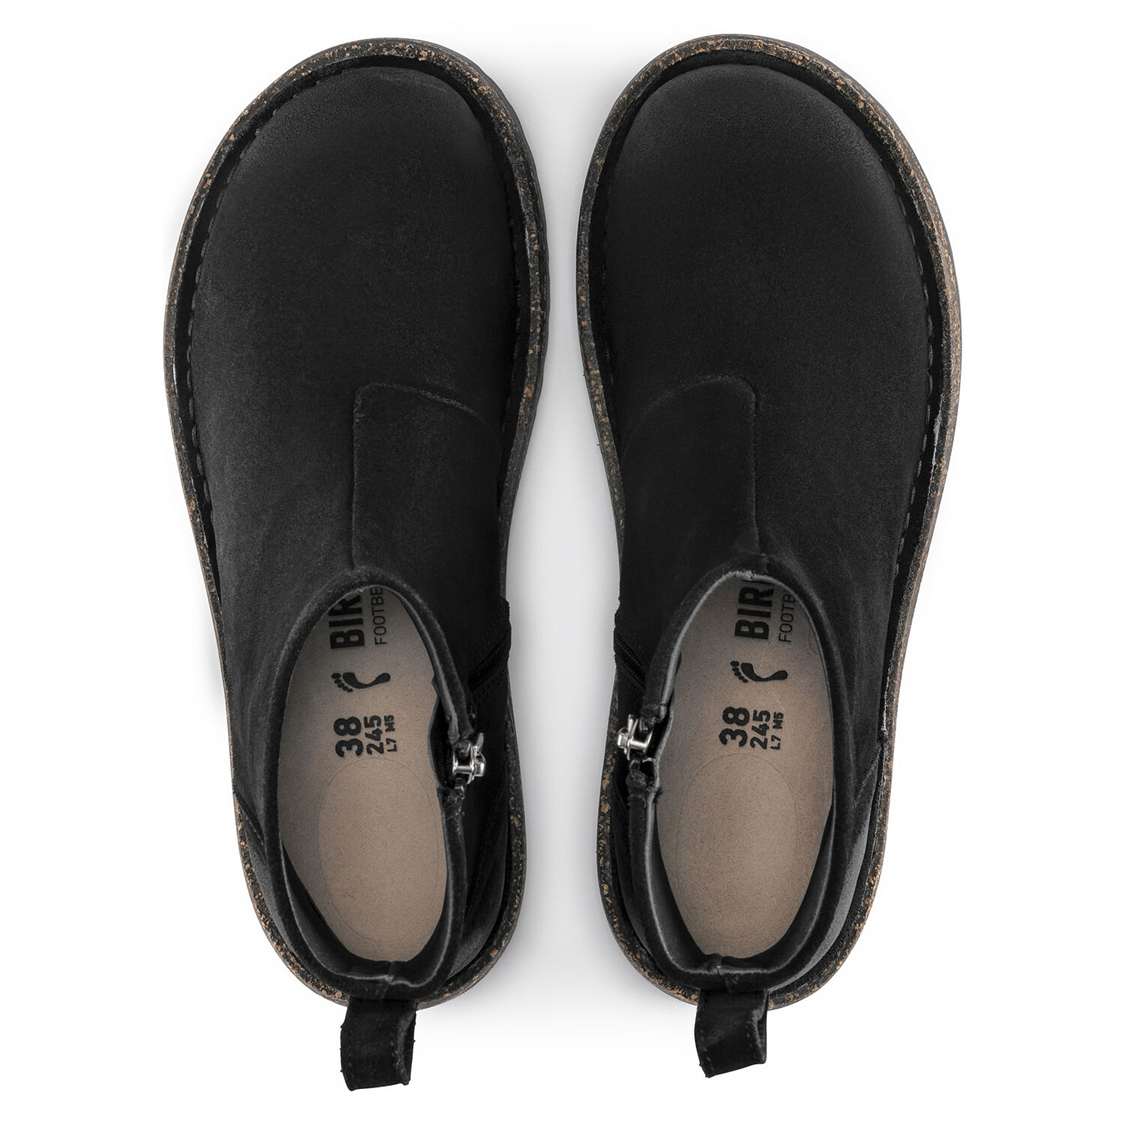 Black Birkenstock Melrose Suede Leather Women's Boots | a61jivmxlYl